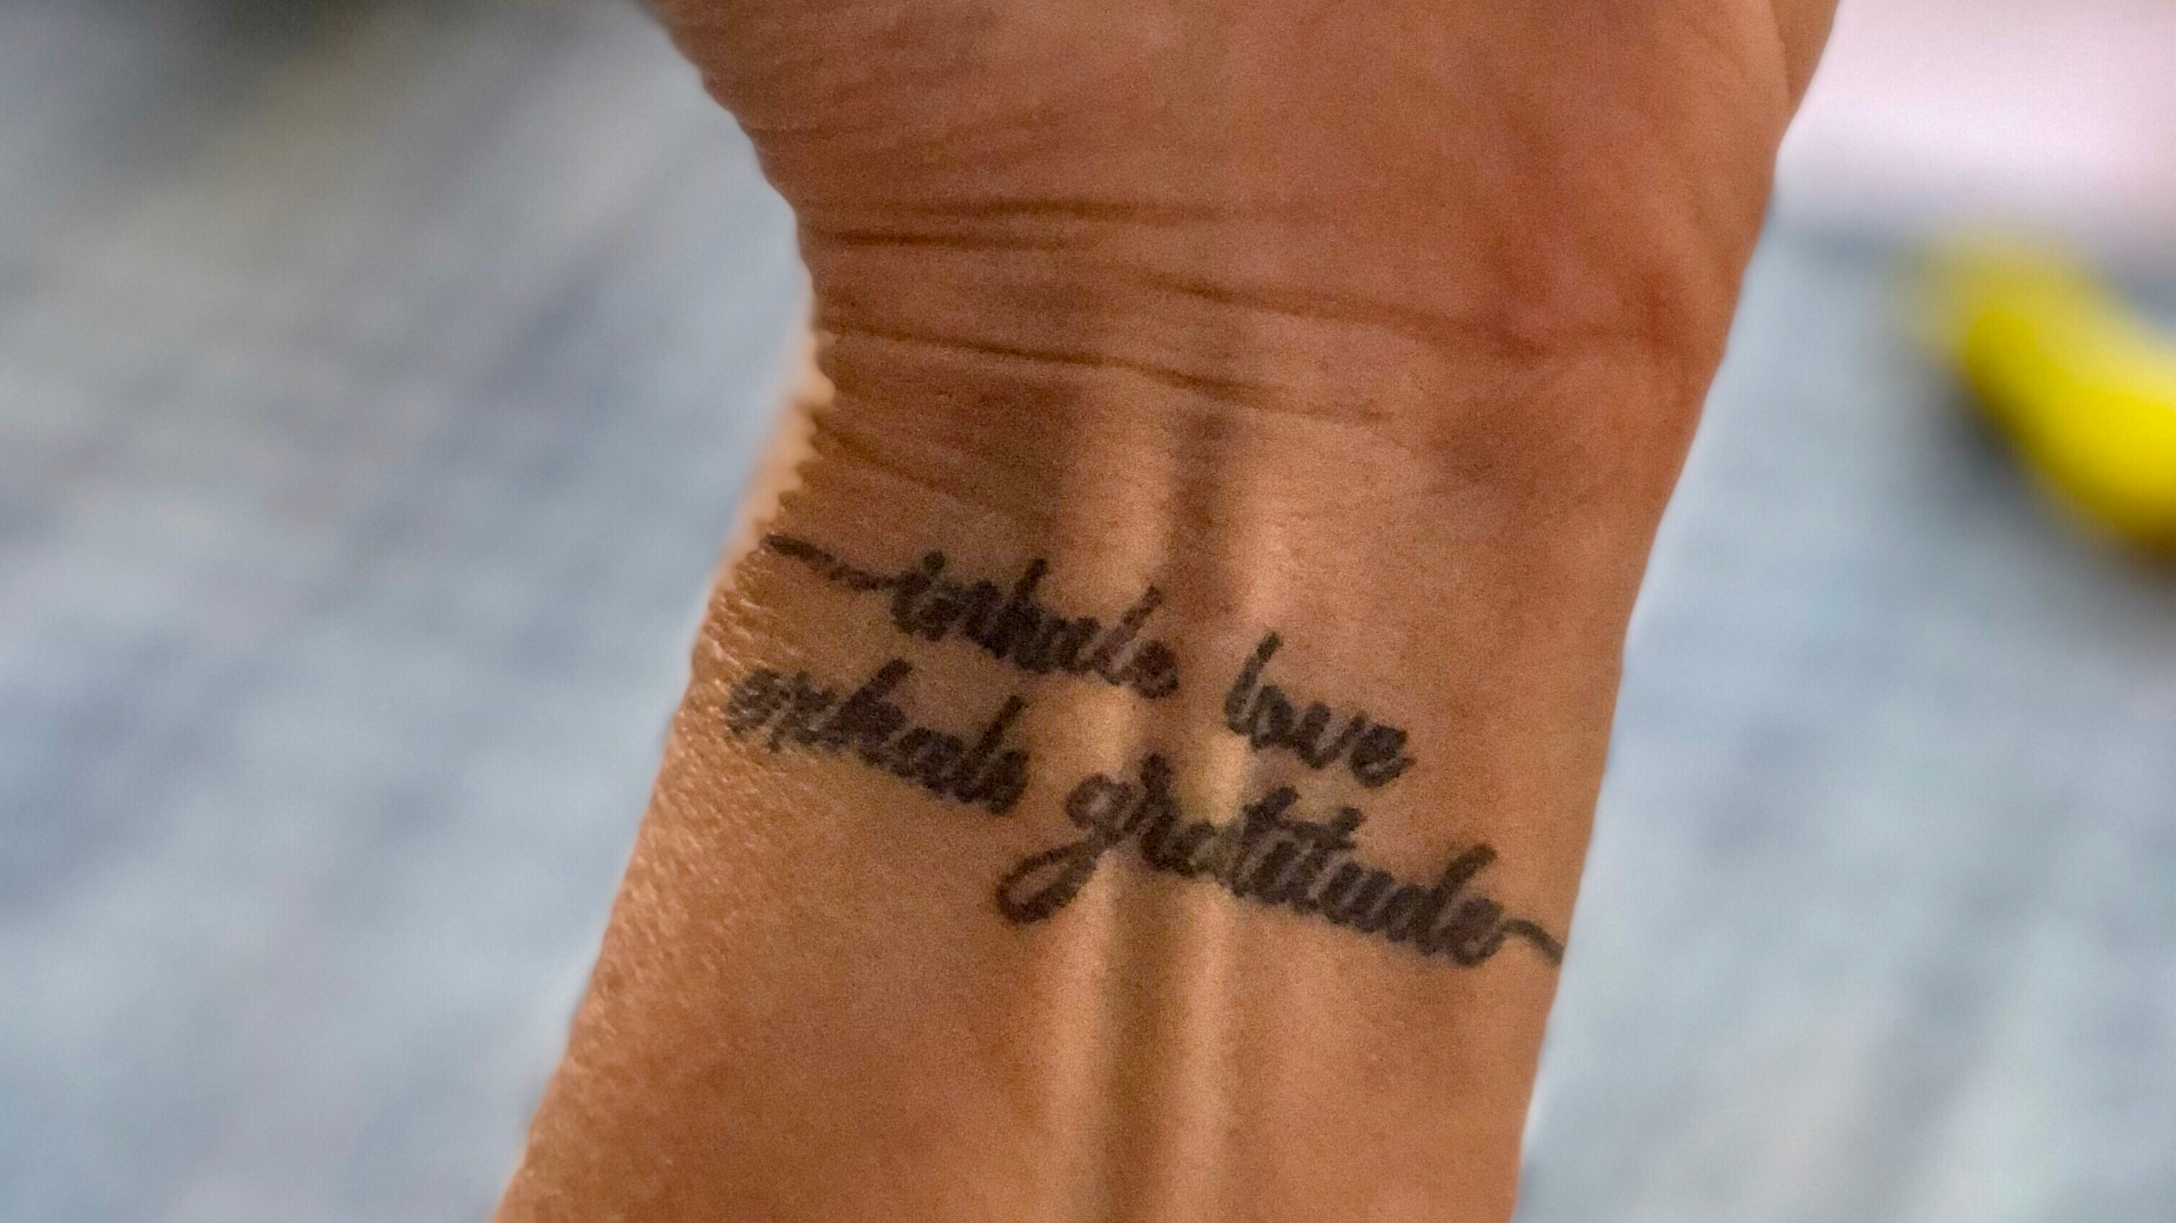 Tattoosday (A Tattoo Blog): Marisa Shares Some Vonnegut